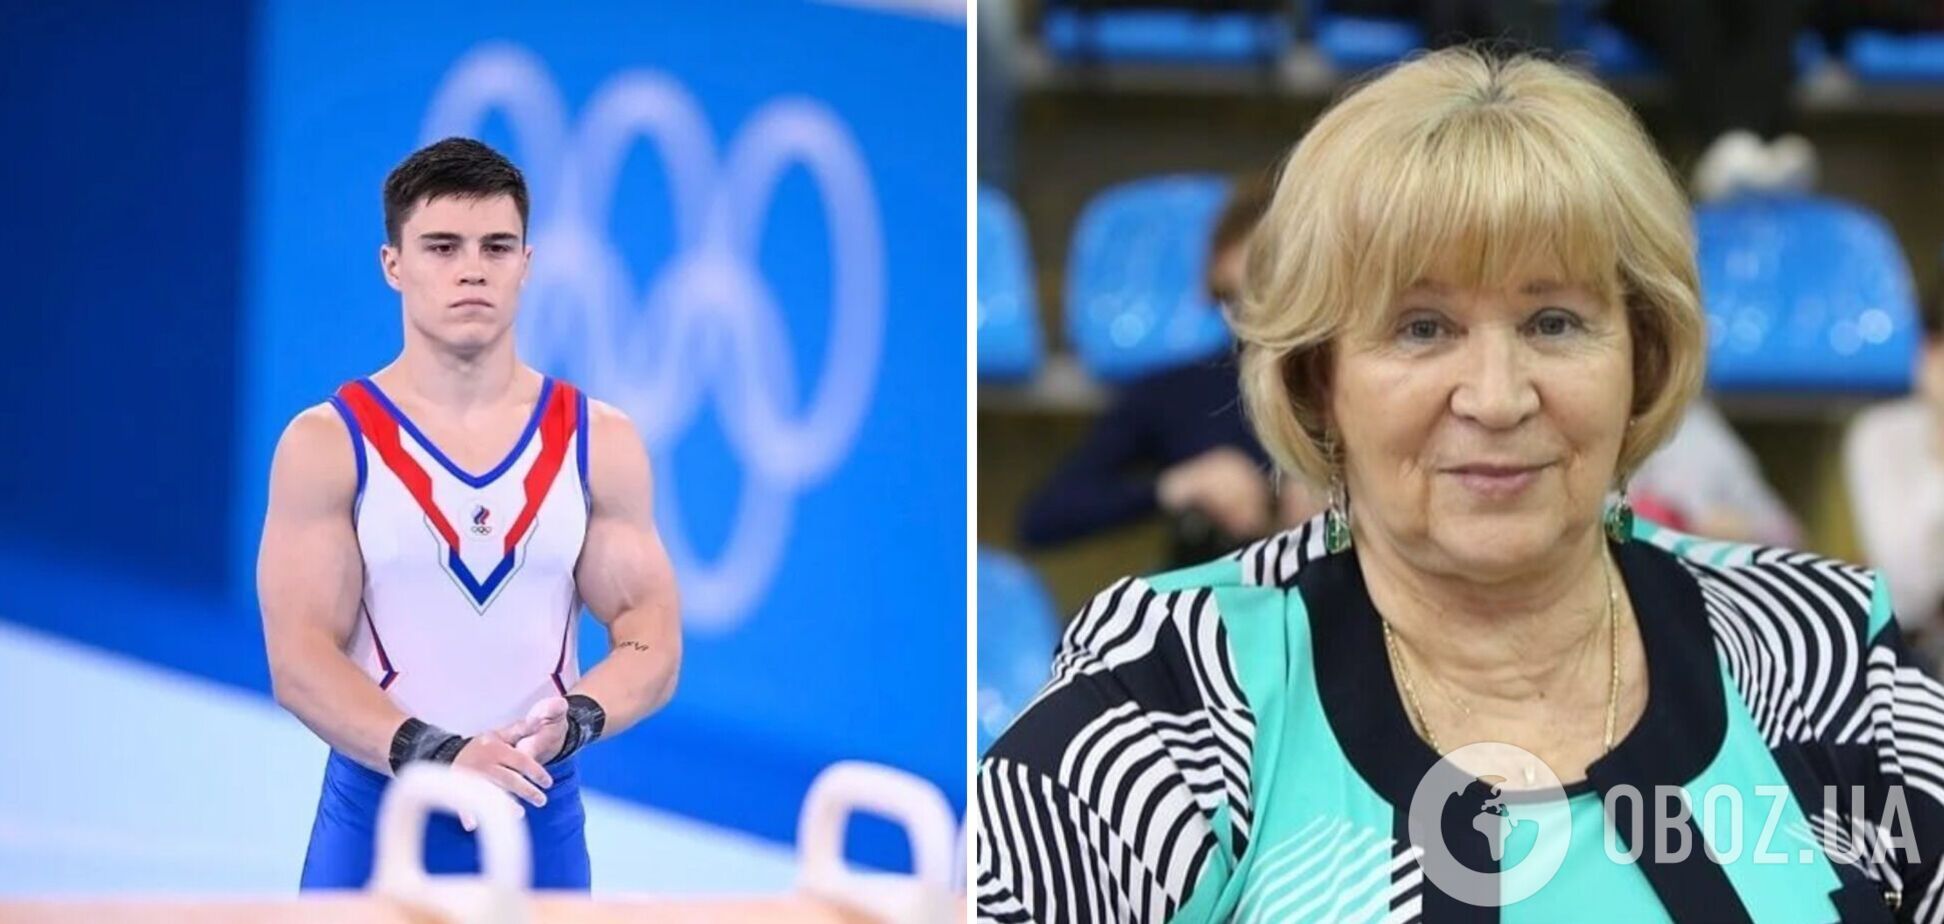 'Ми не зрадники': російські гімнасти заявили, що 'навмисно не беруть участь у відборі на Олімпіаду'